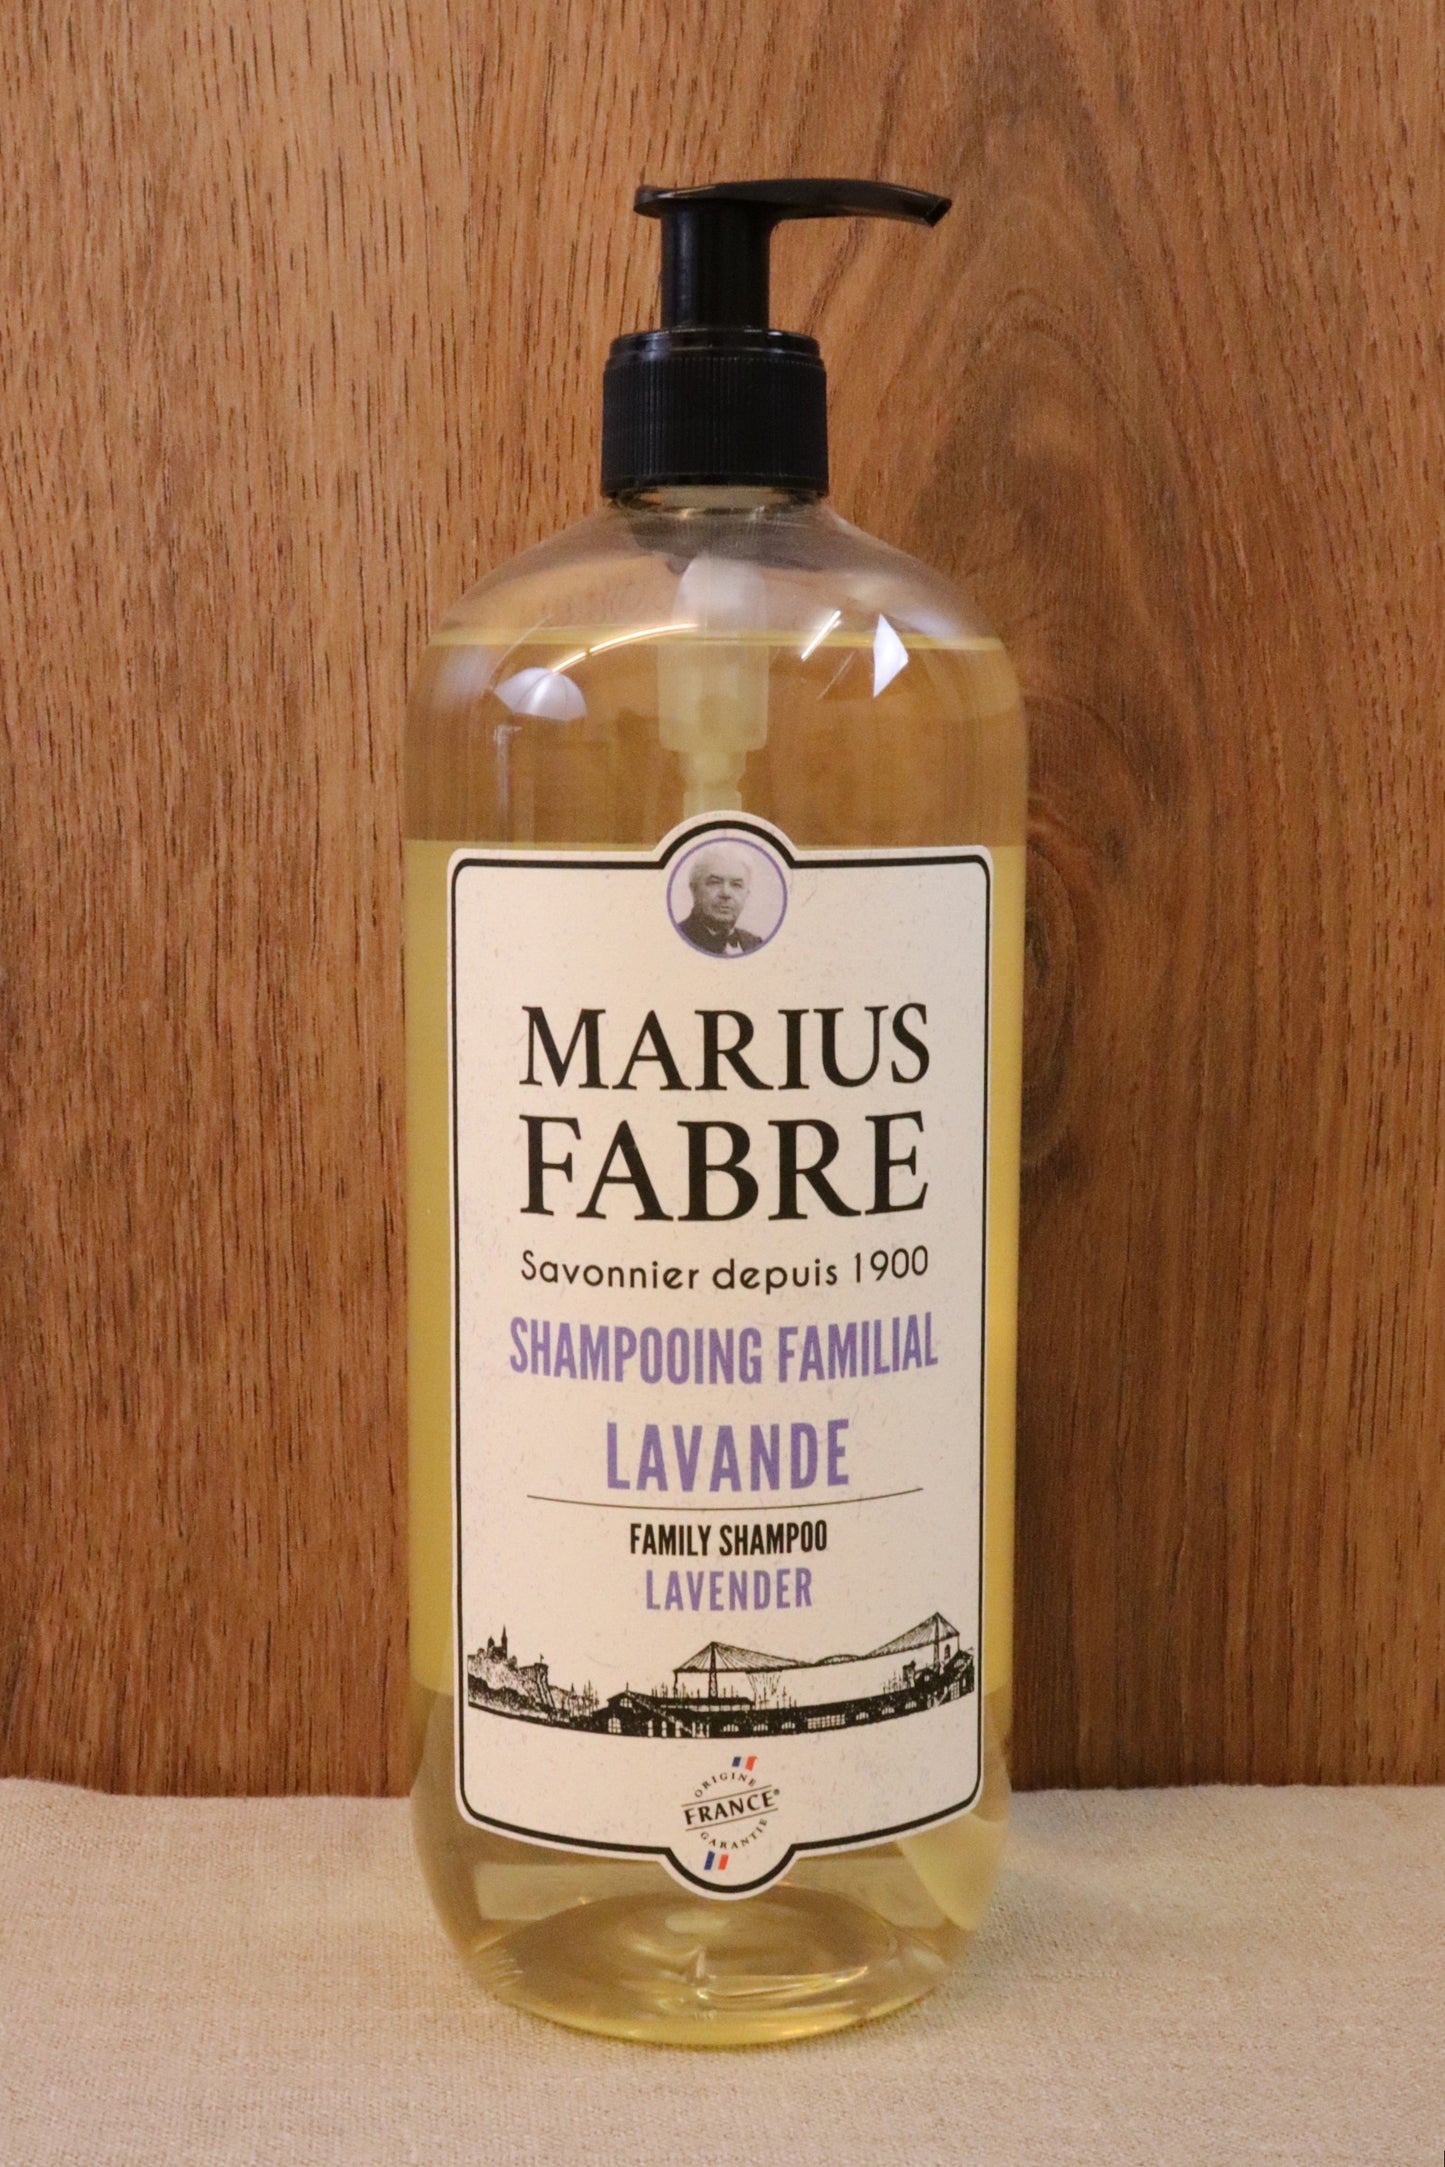 Shampoo Lavendel, Marius Fabre